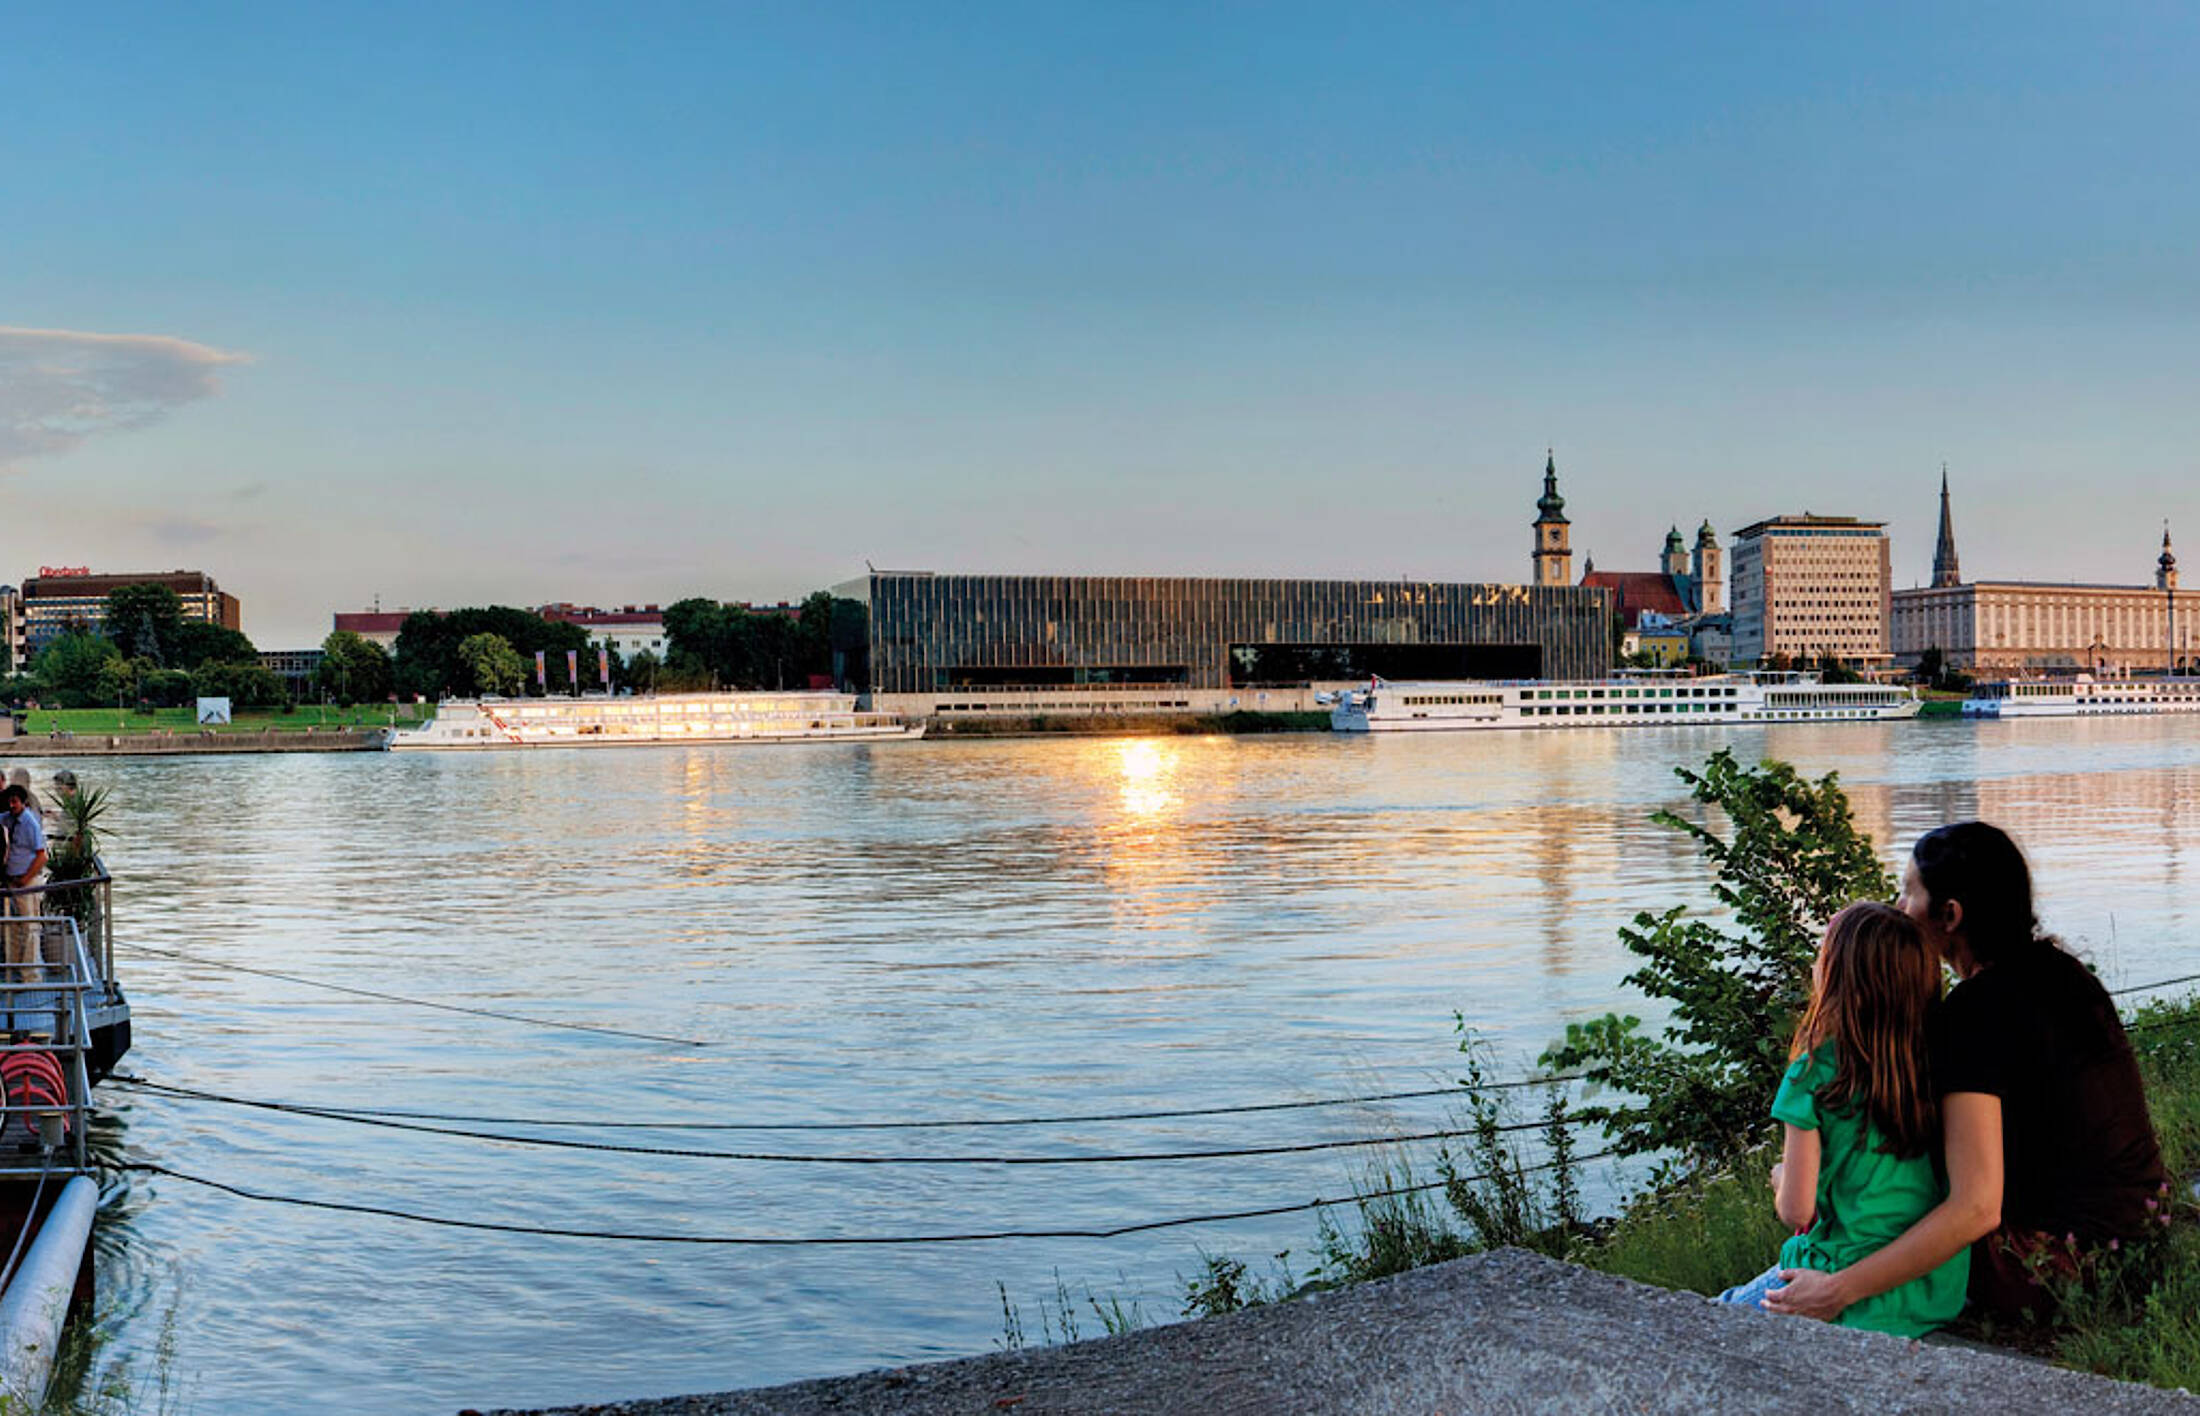 Sommermomente an der Donau genießen.